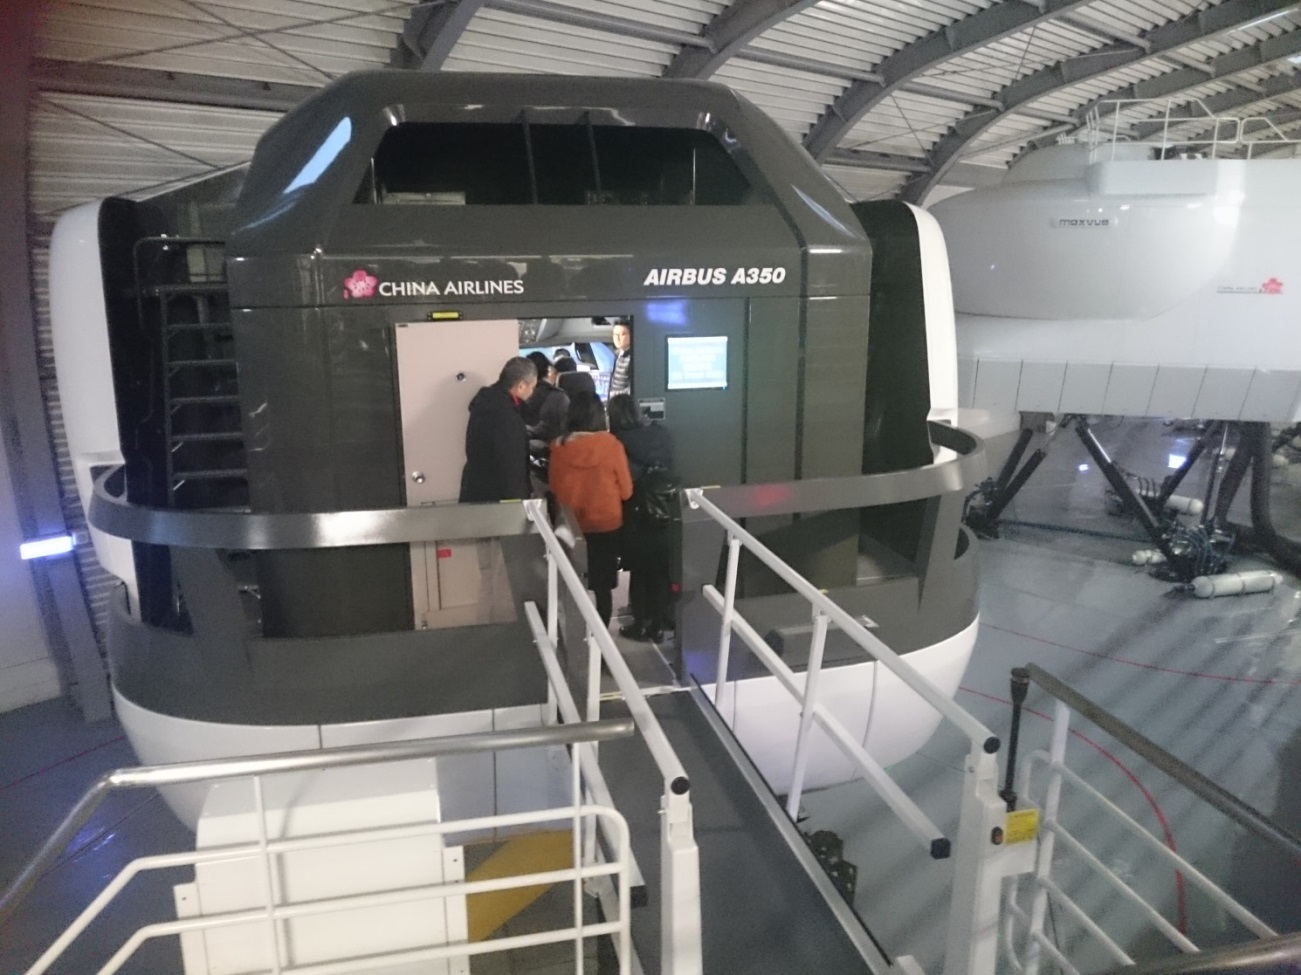 參訪中華航空公司桃園華航園區航務處空中巴士A350動態模擬機。